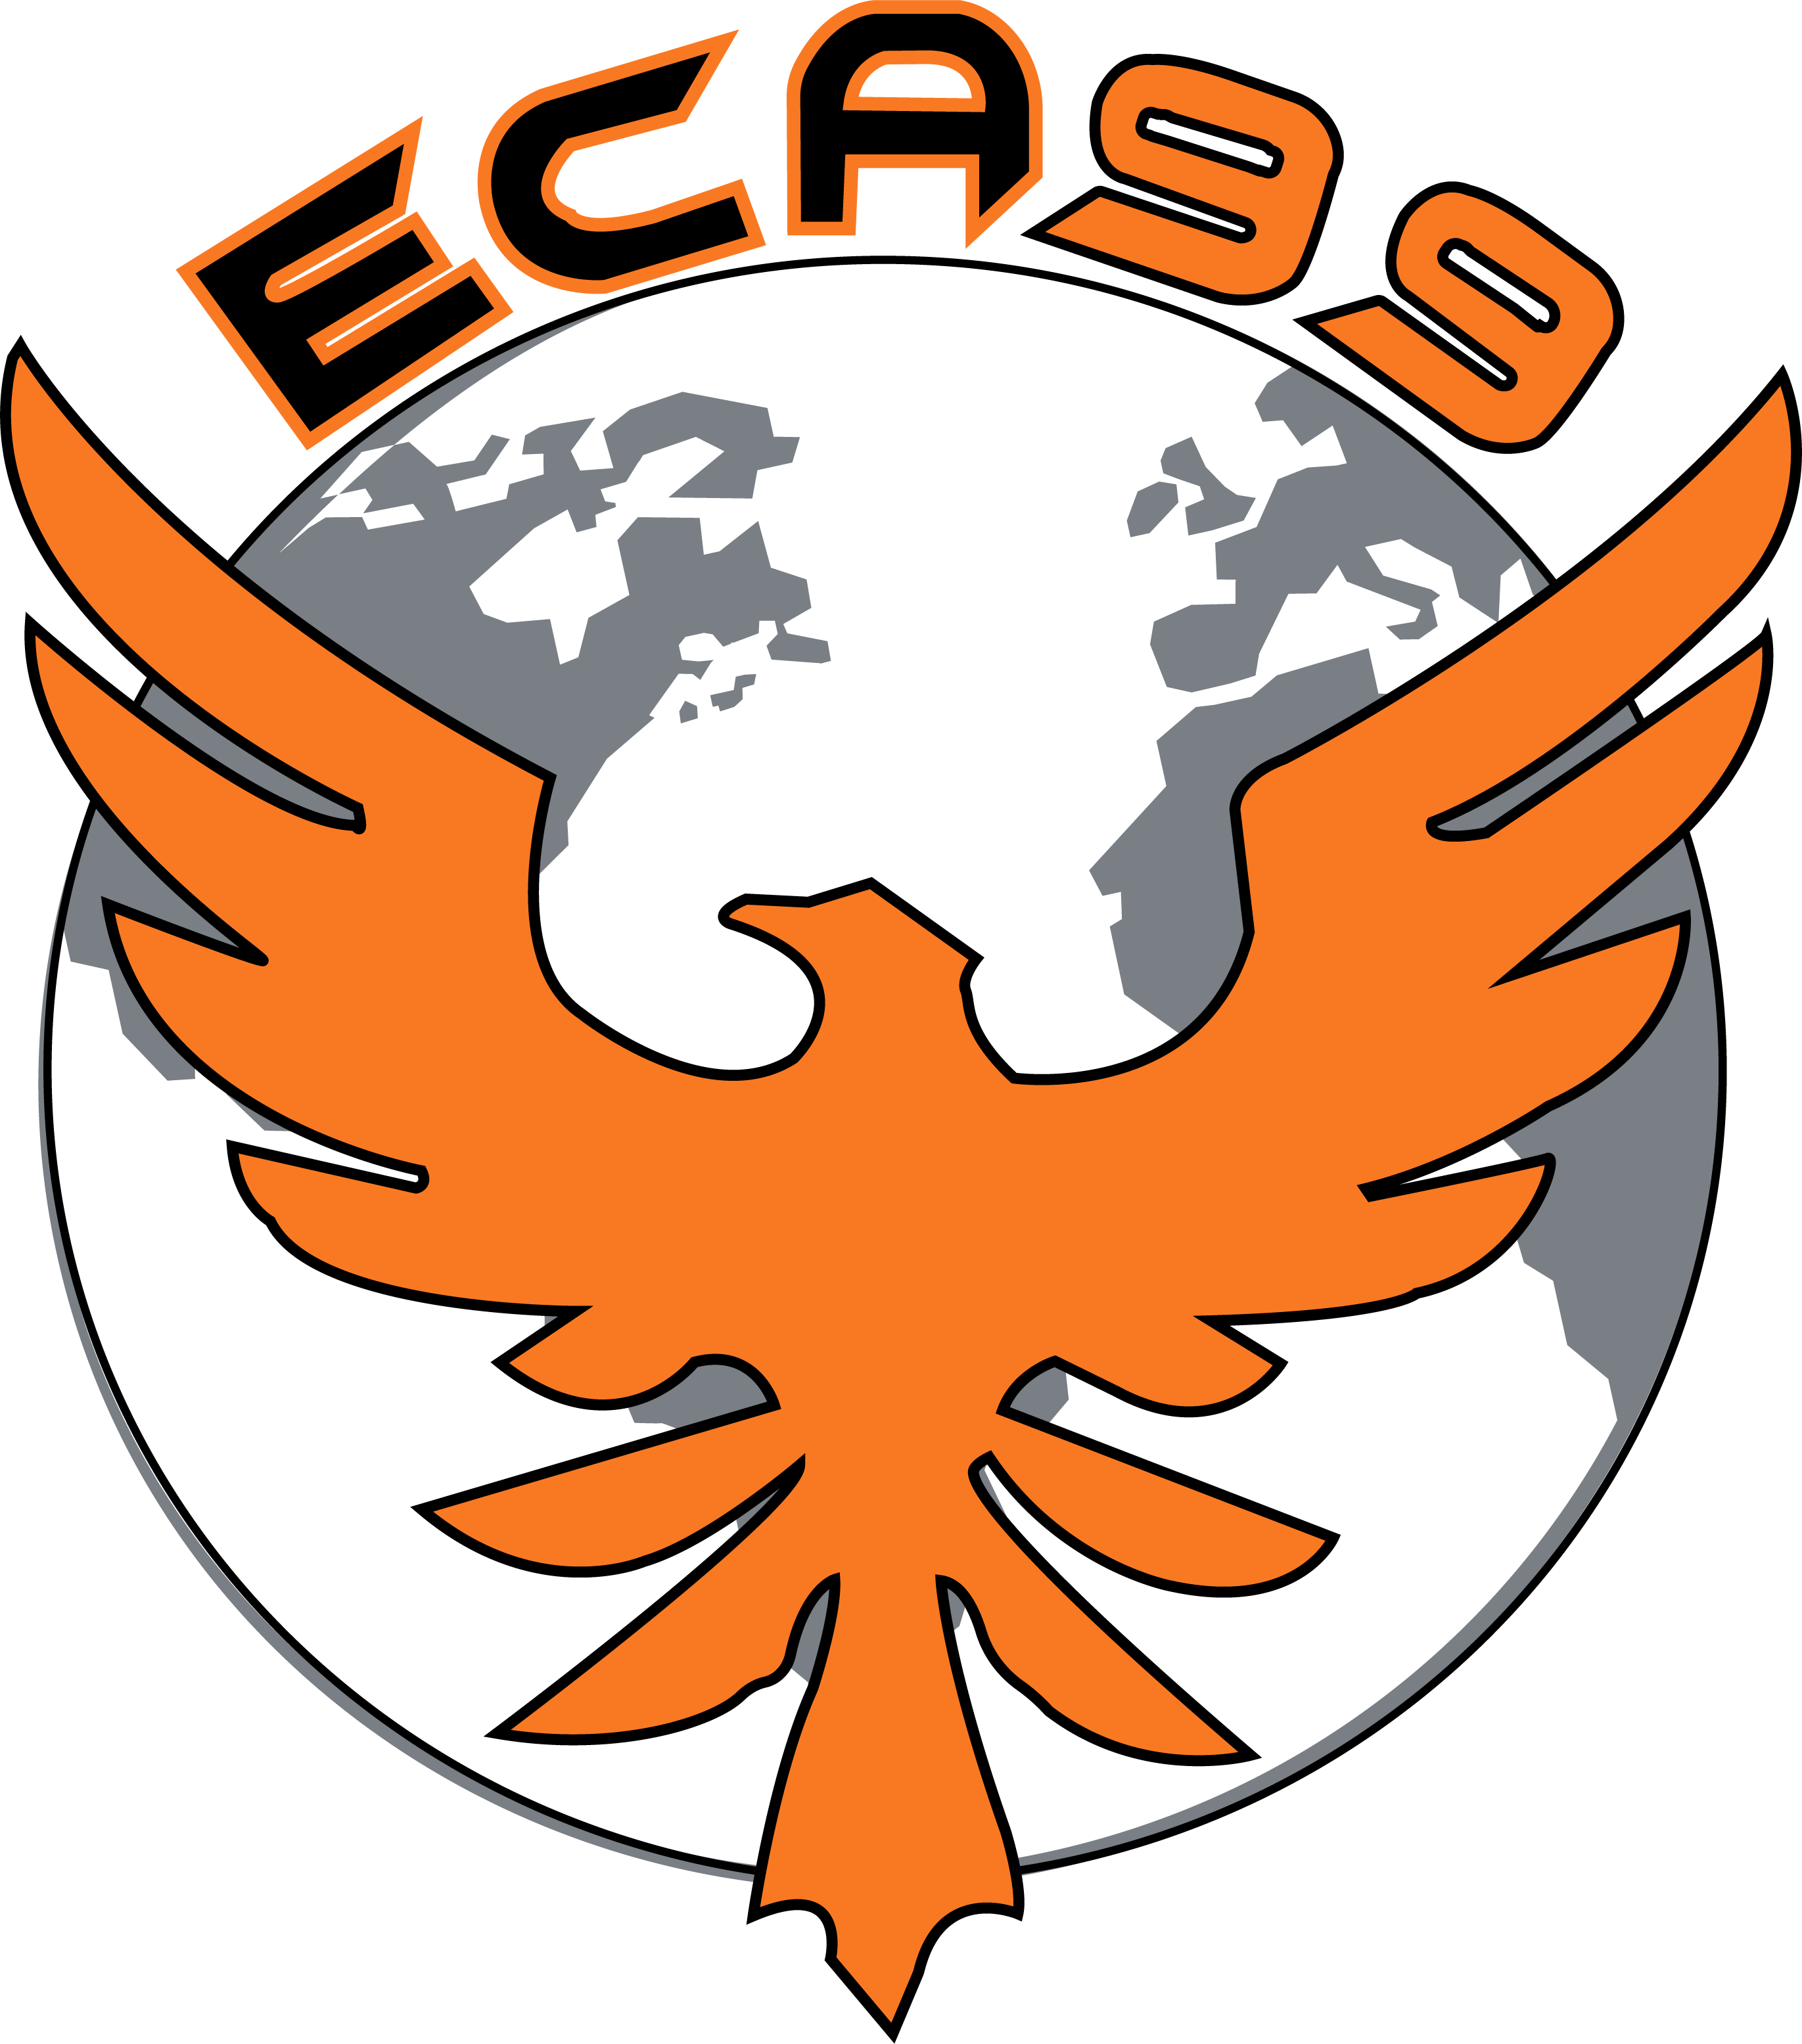 eca99 Logo